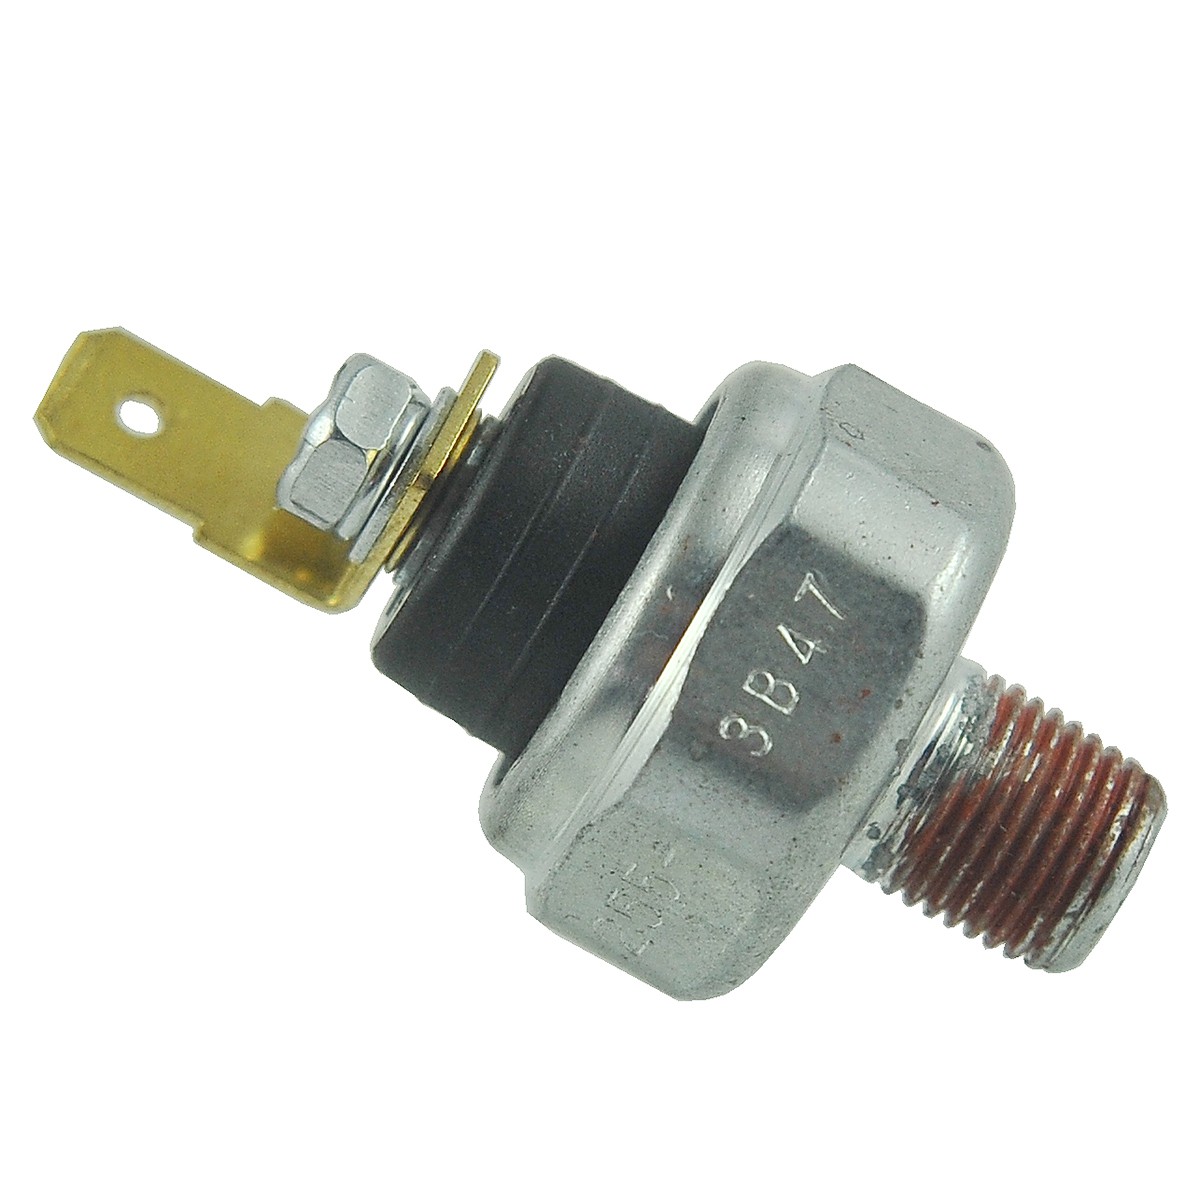 Oil pressure sensor / 0.25 bar / Kubota D950/D1005/D1100/V1505/V1902/V1903 / Iseki E3AE1 / 1A024-39010 / 15531-39010